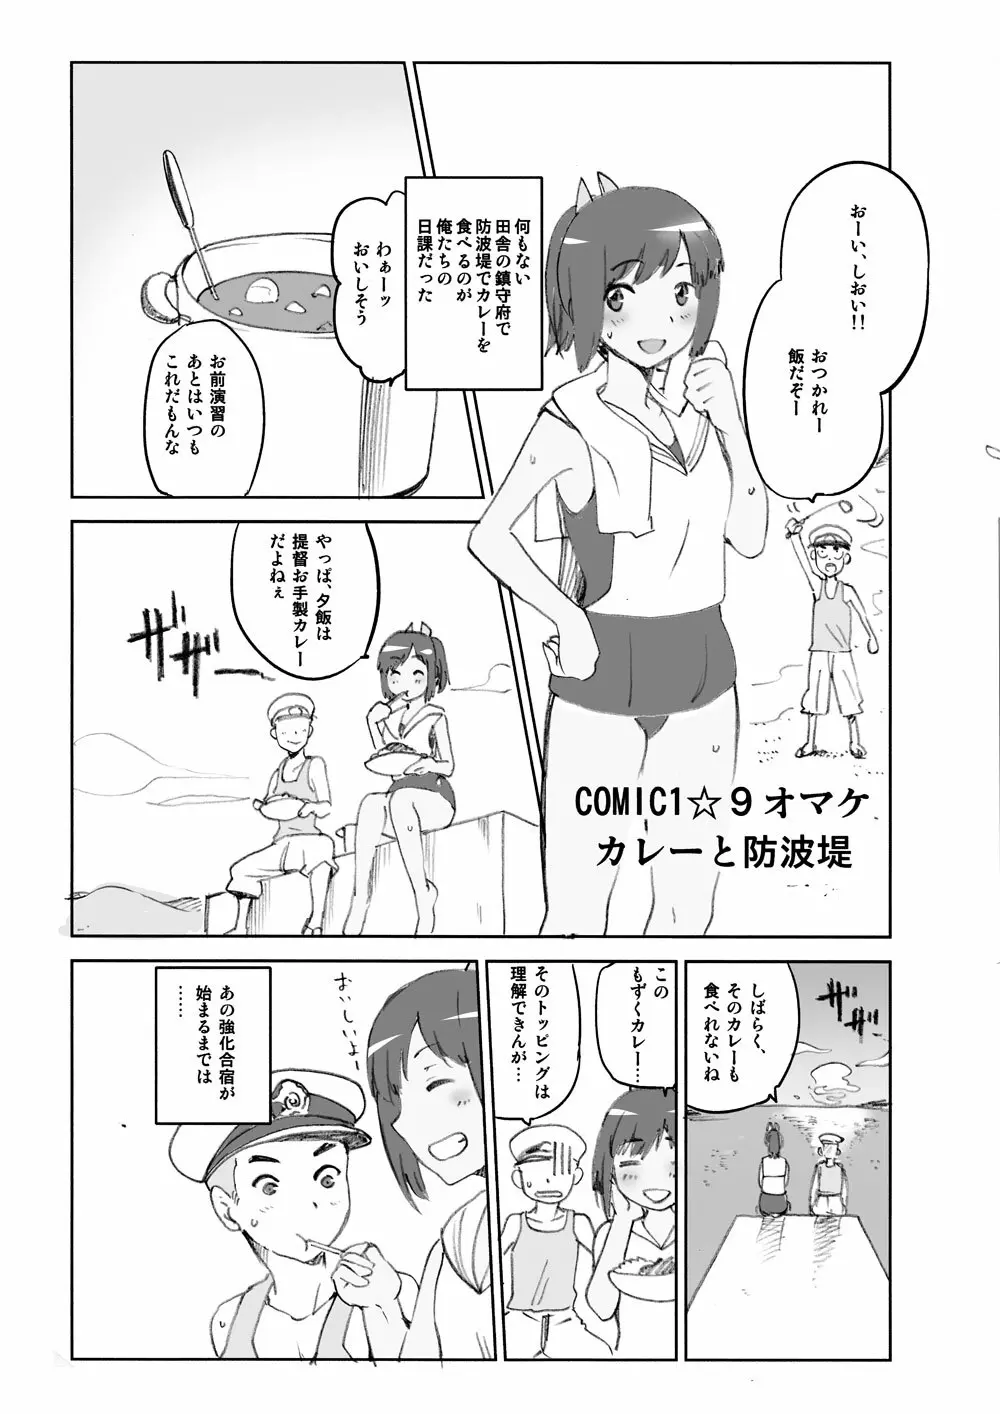 COMIC1☆9 オマケ カレーと防波堤 1ページ